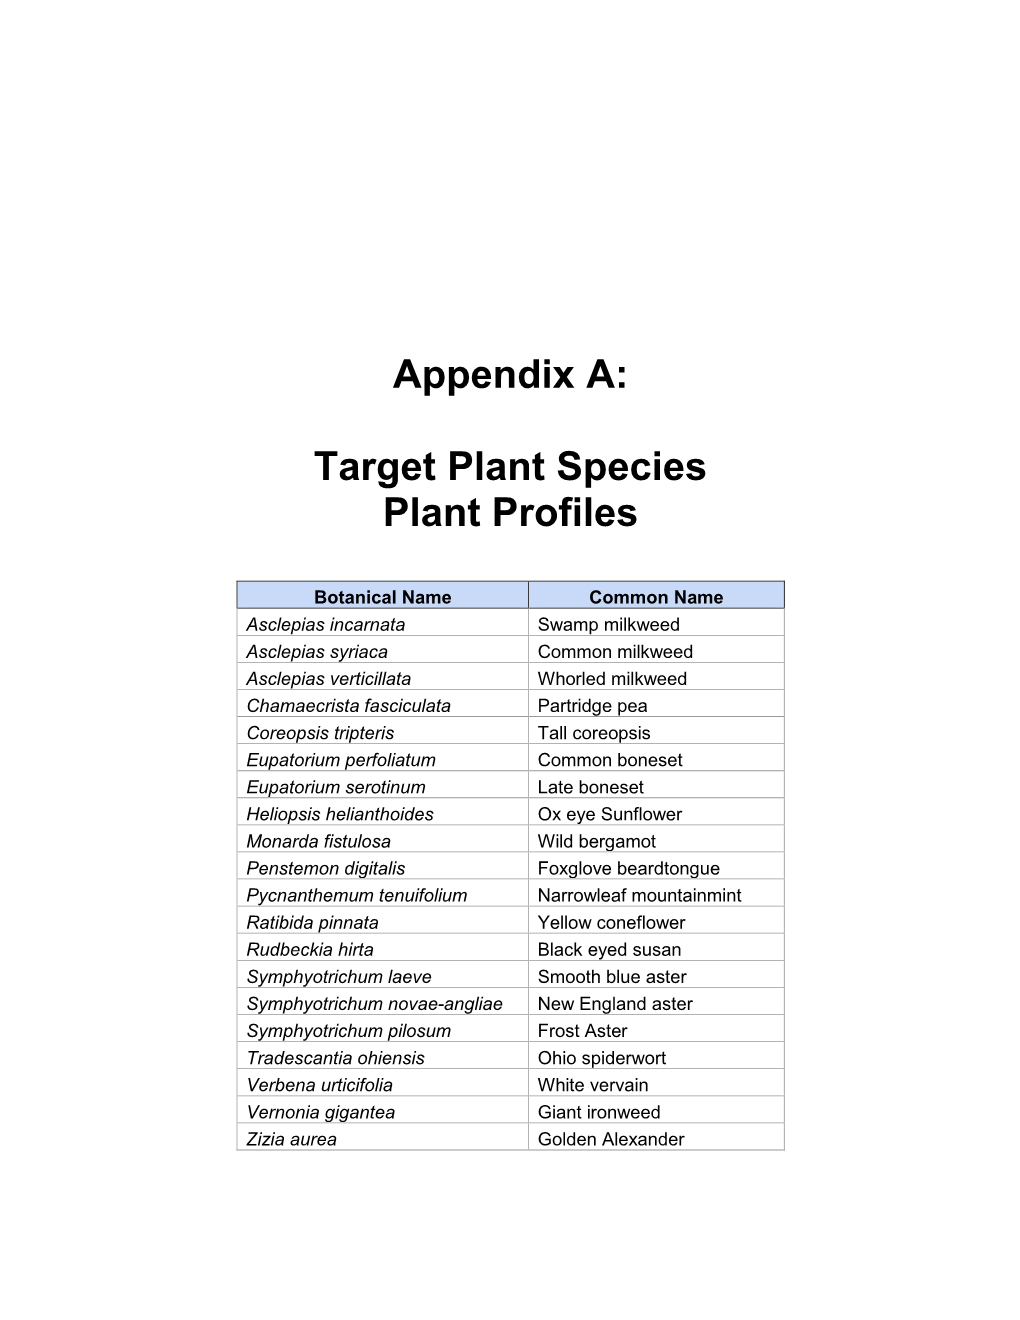 Appendix A: Target Plant Species Plant Profiles